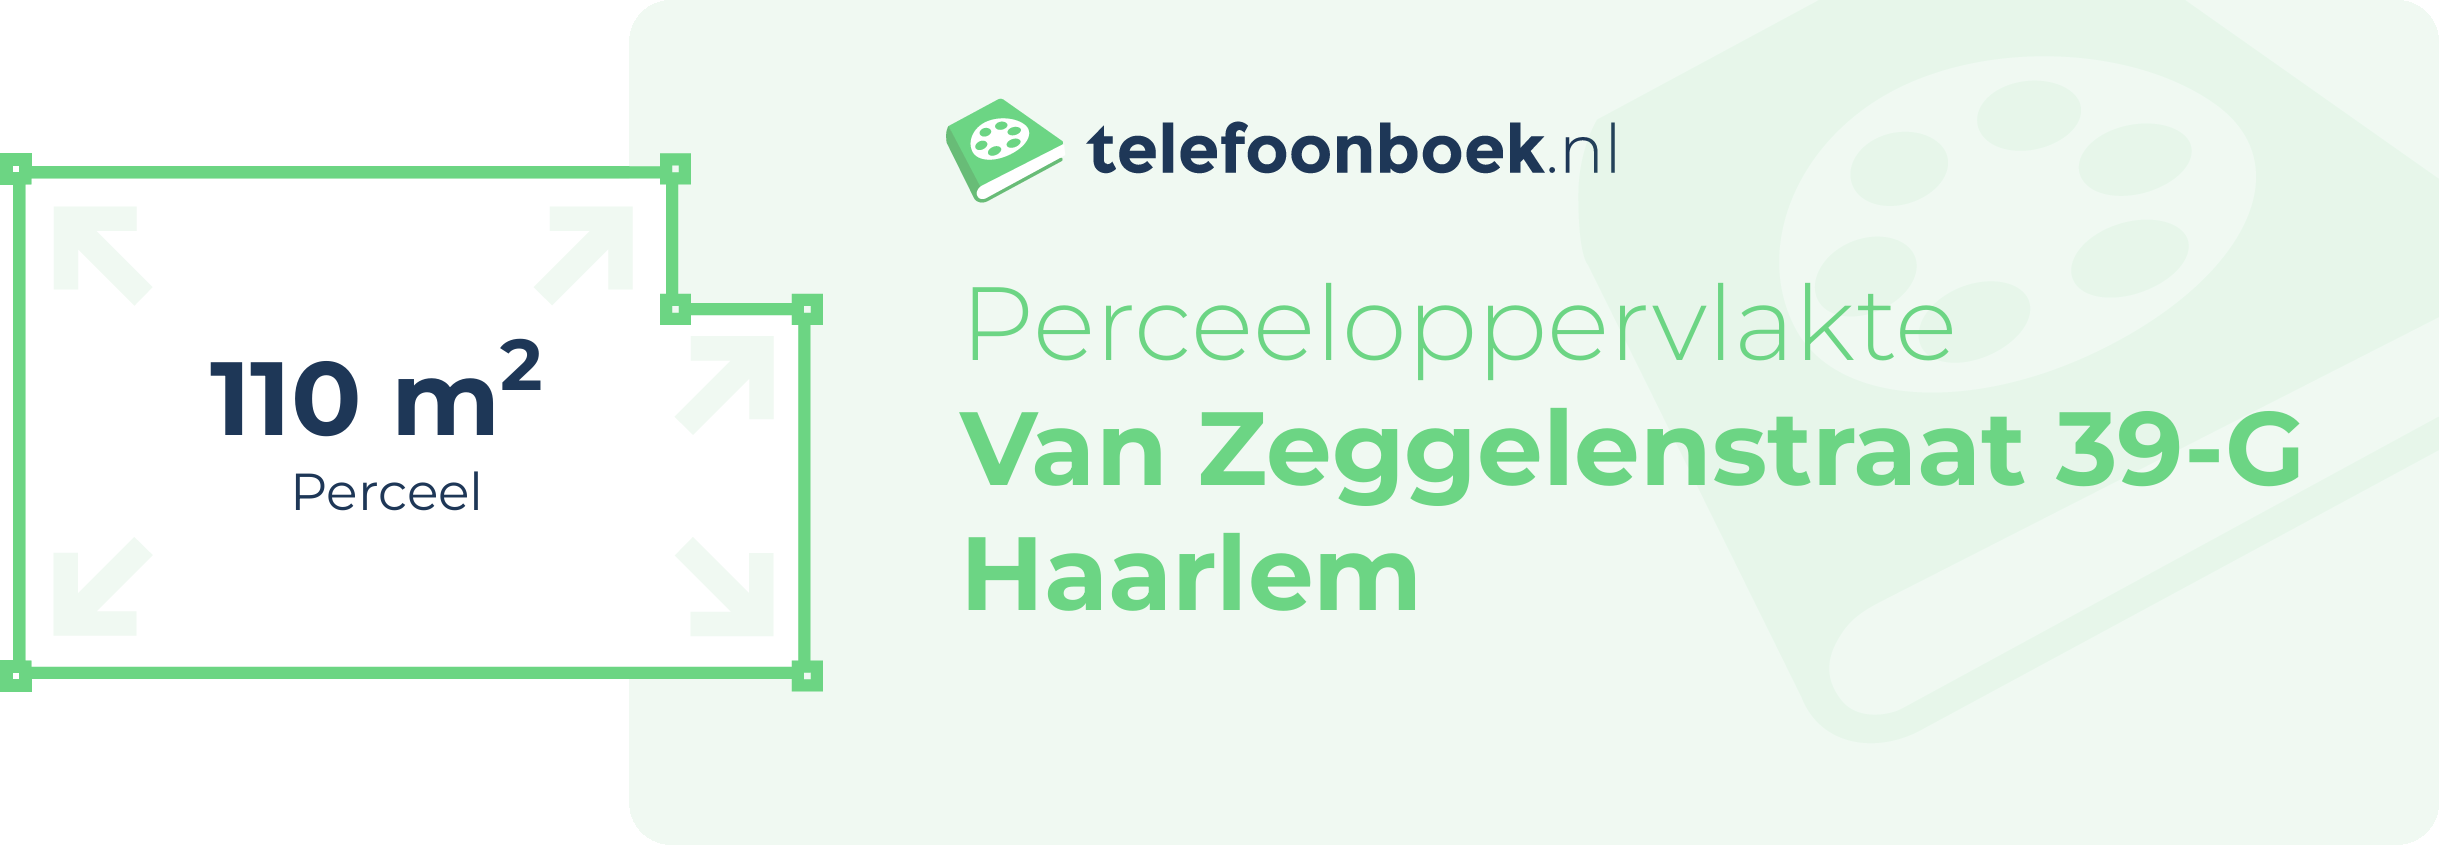 Perceeloppervlakte Van Zeggelenstraat 39-G Haarlem